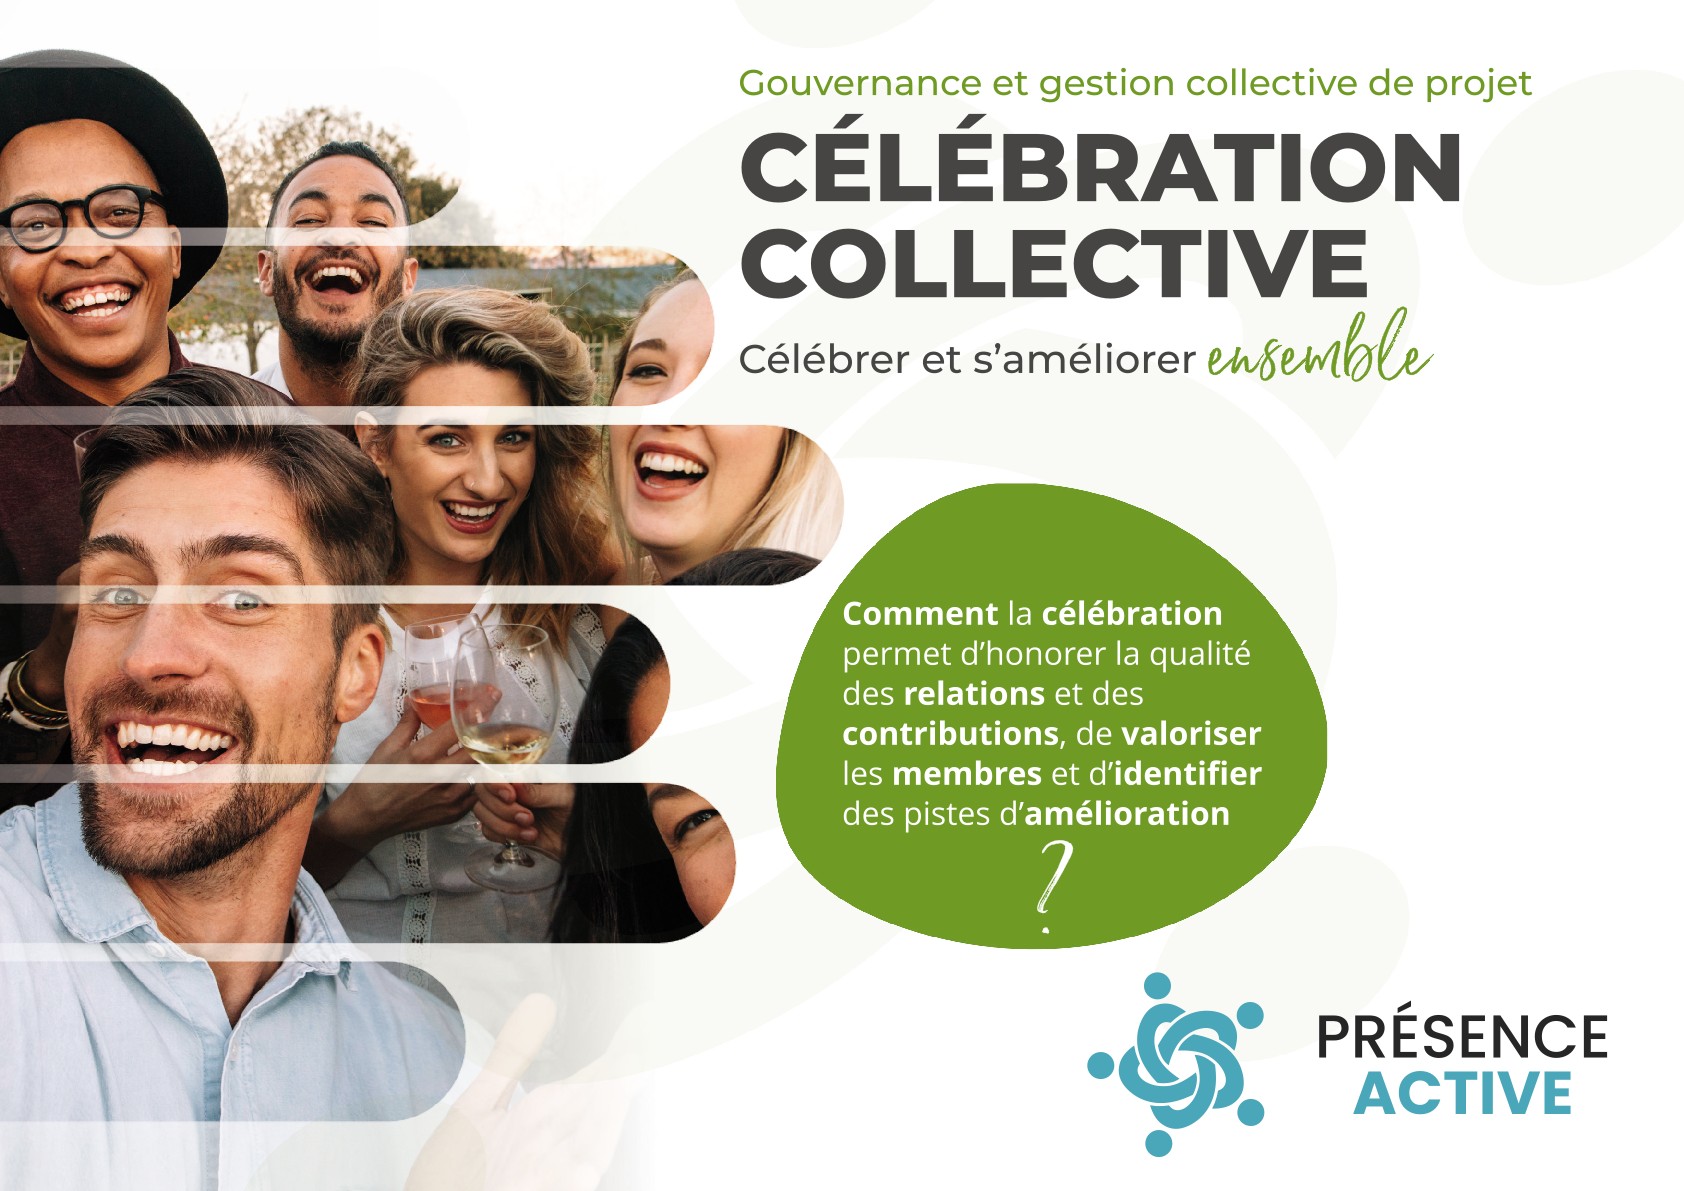 La célébration collective